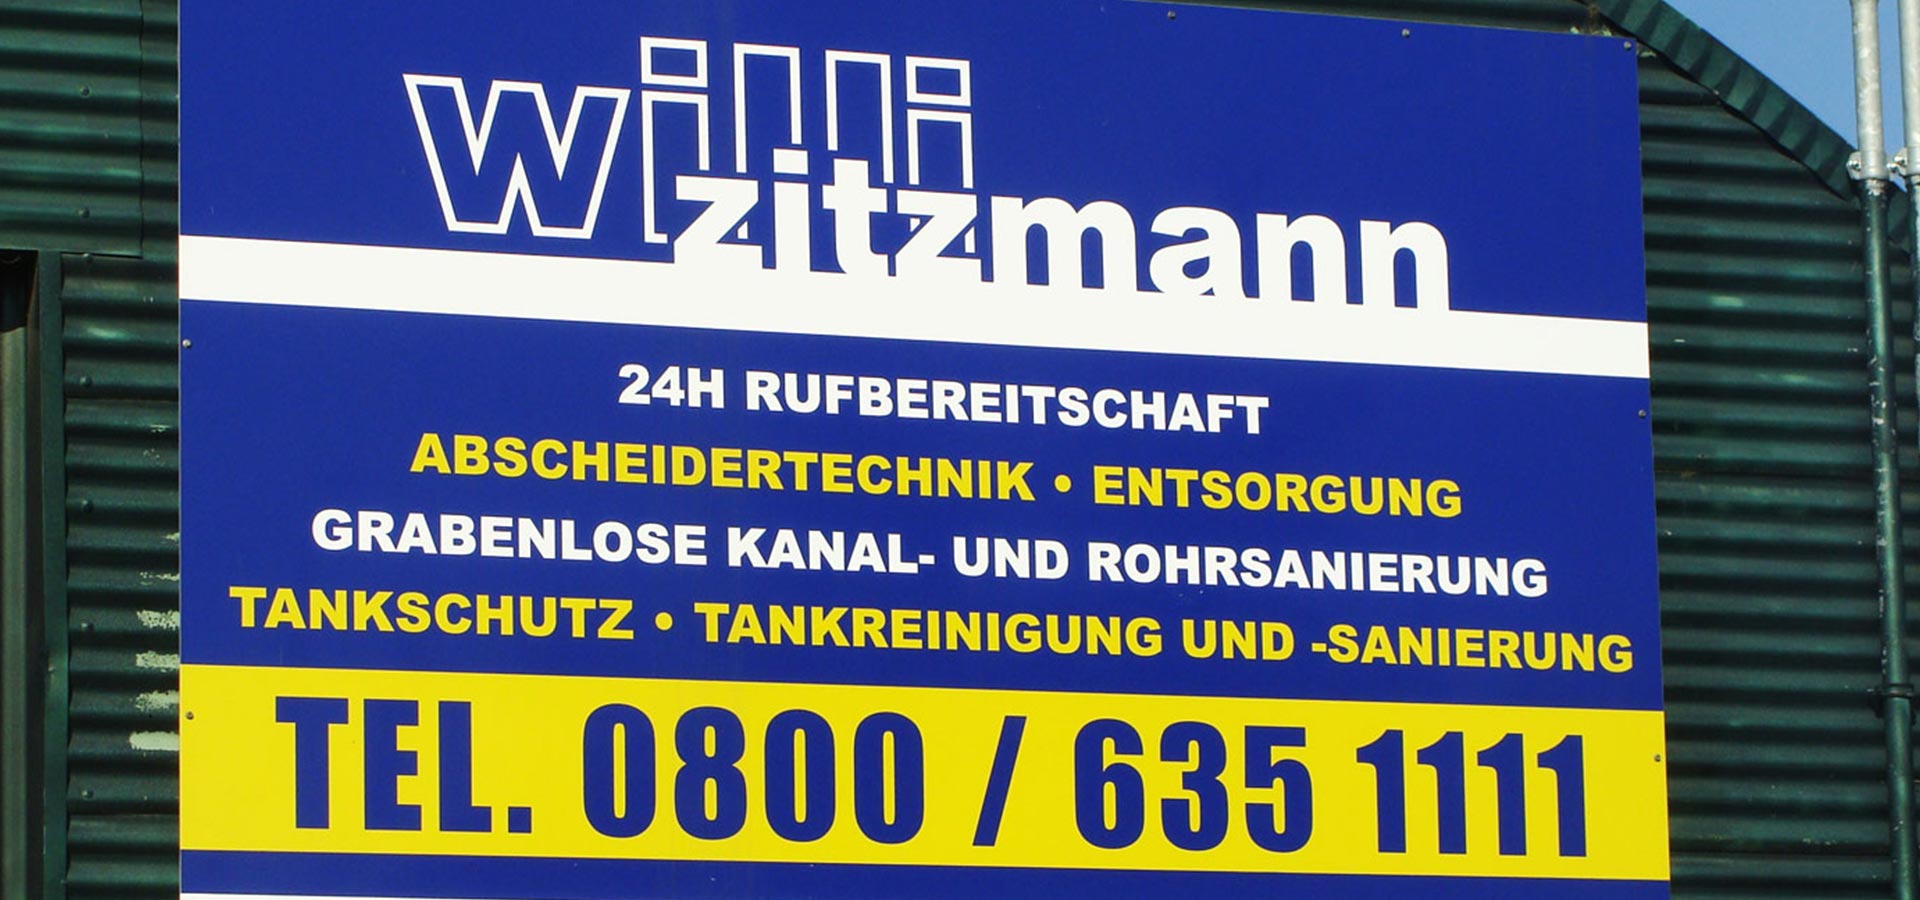 Jobs Willi Zitzmann